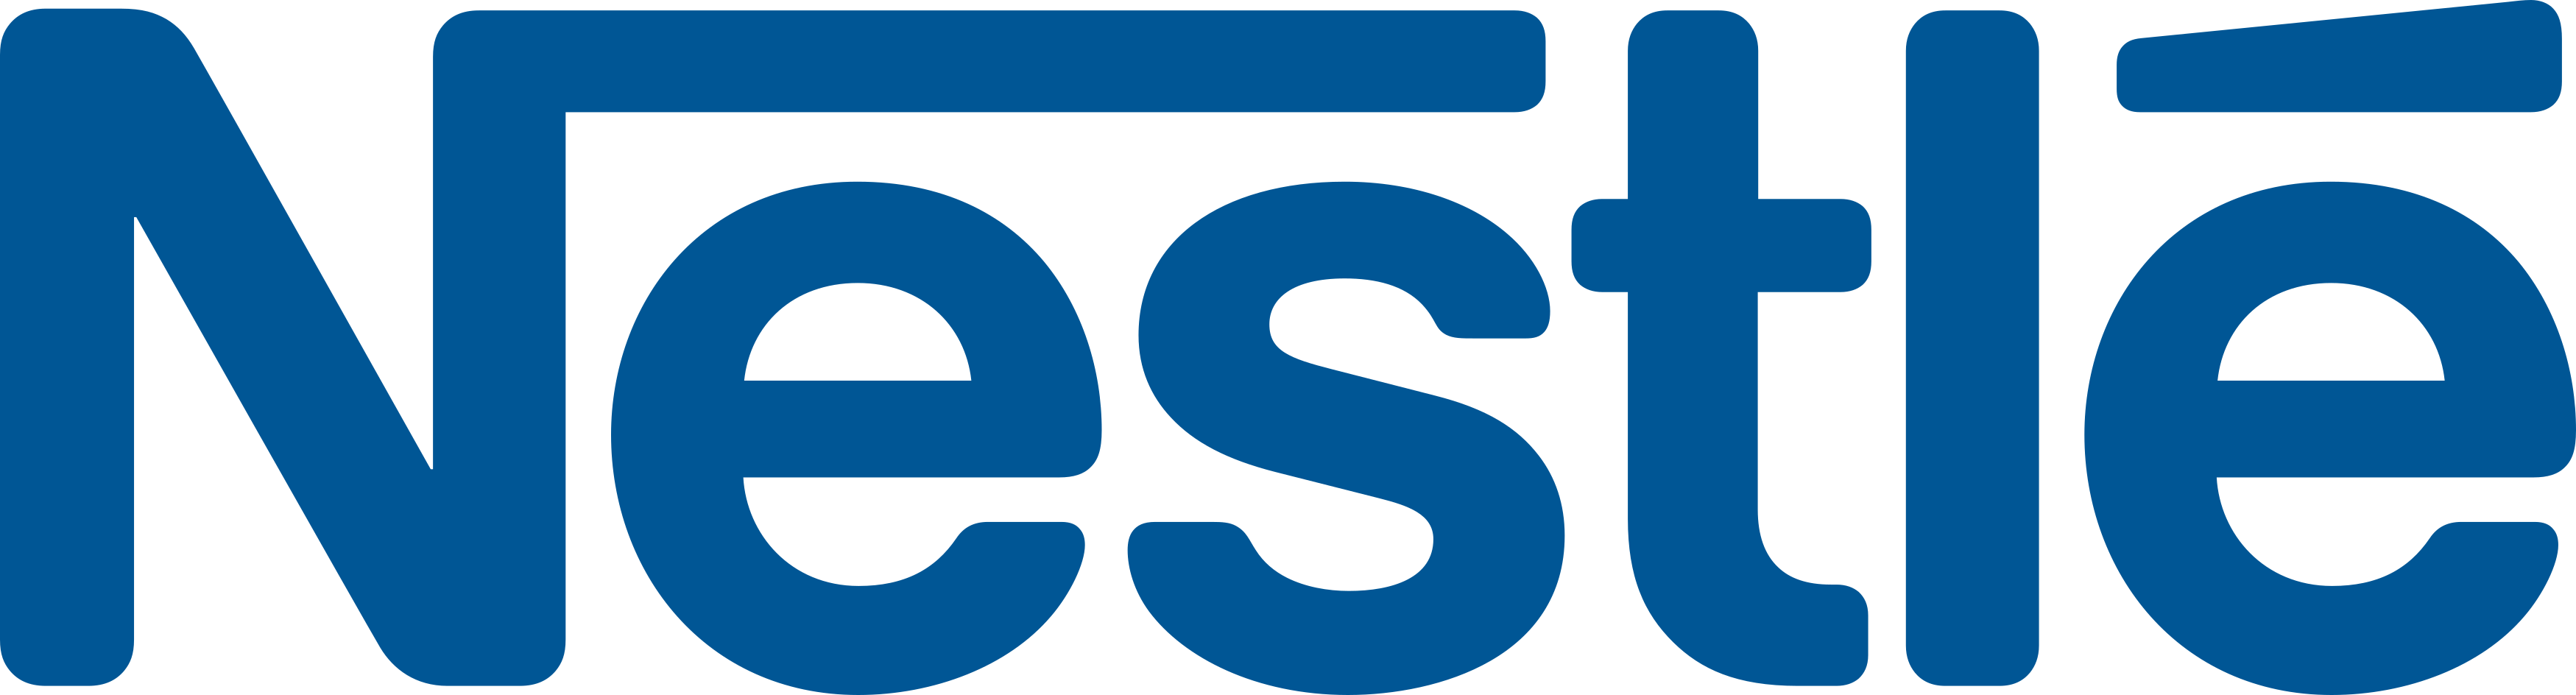 Nestle logo PNG image image